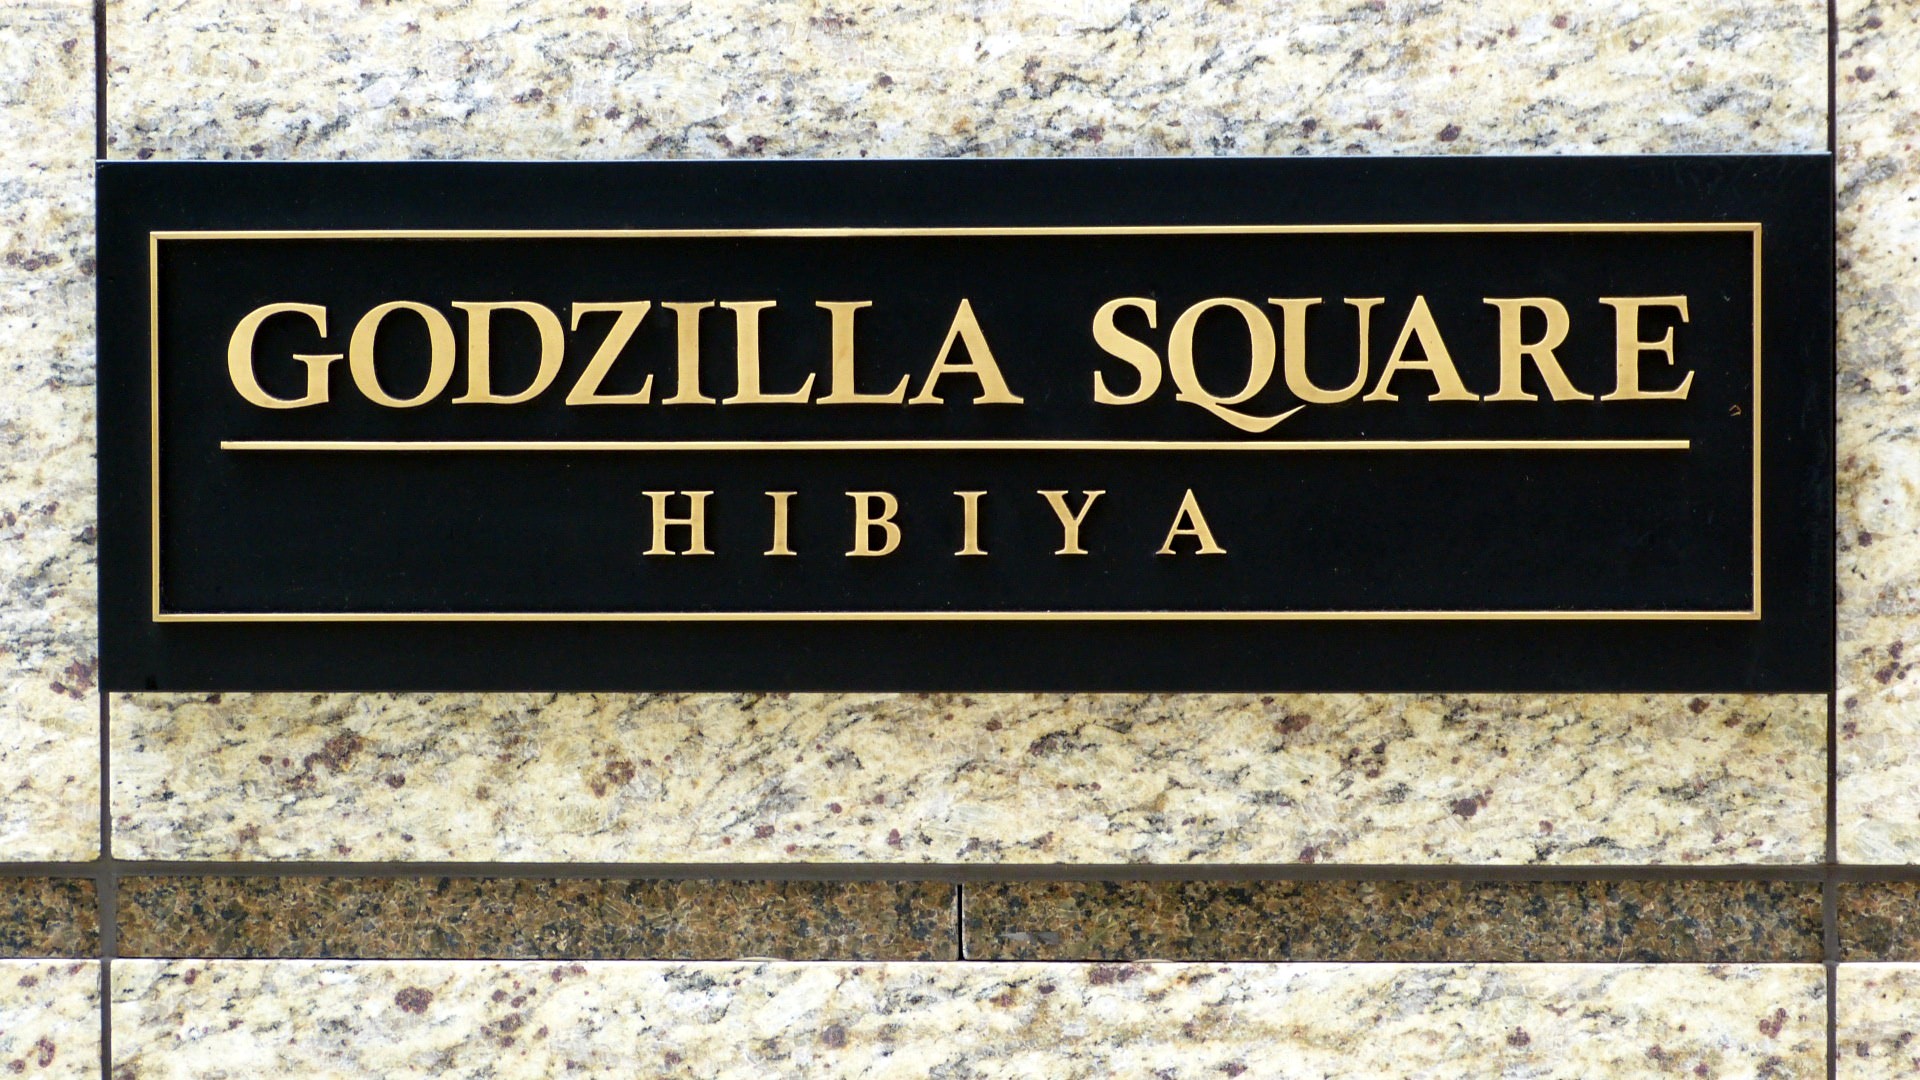 sign for godzilla square, hibiya